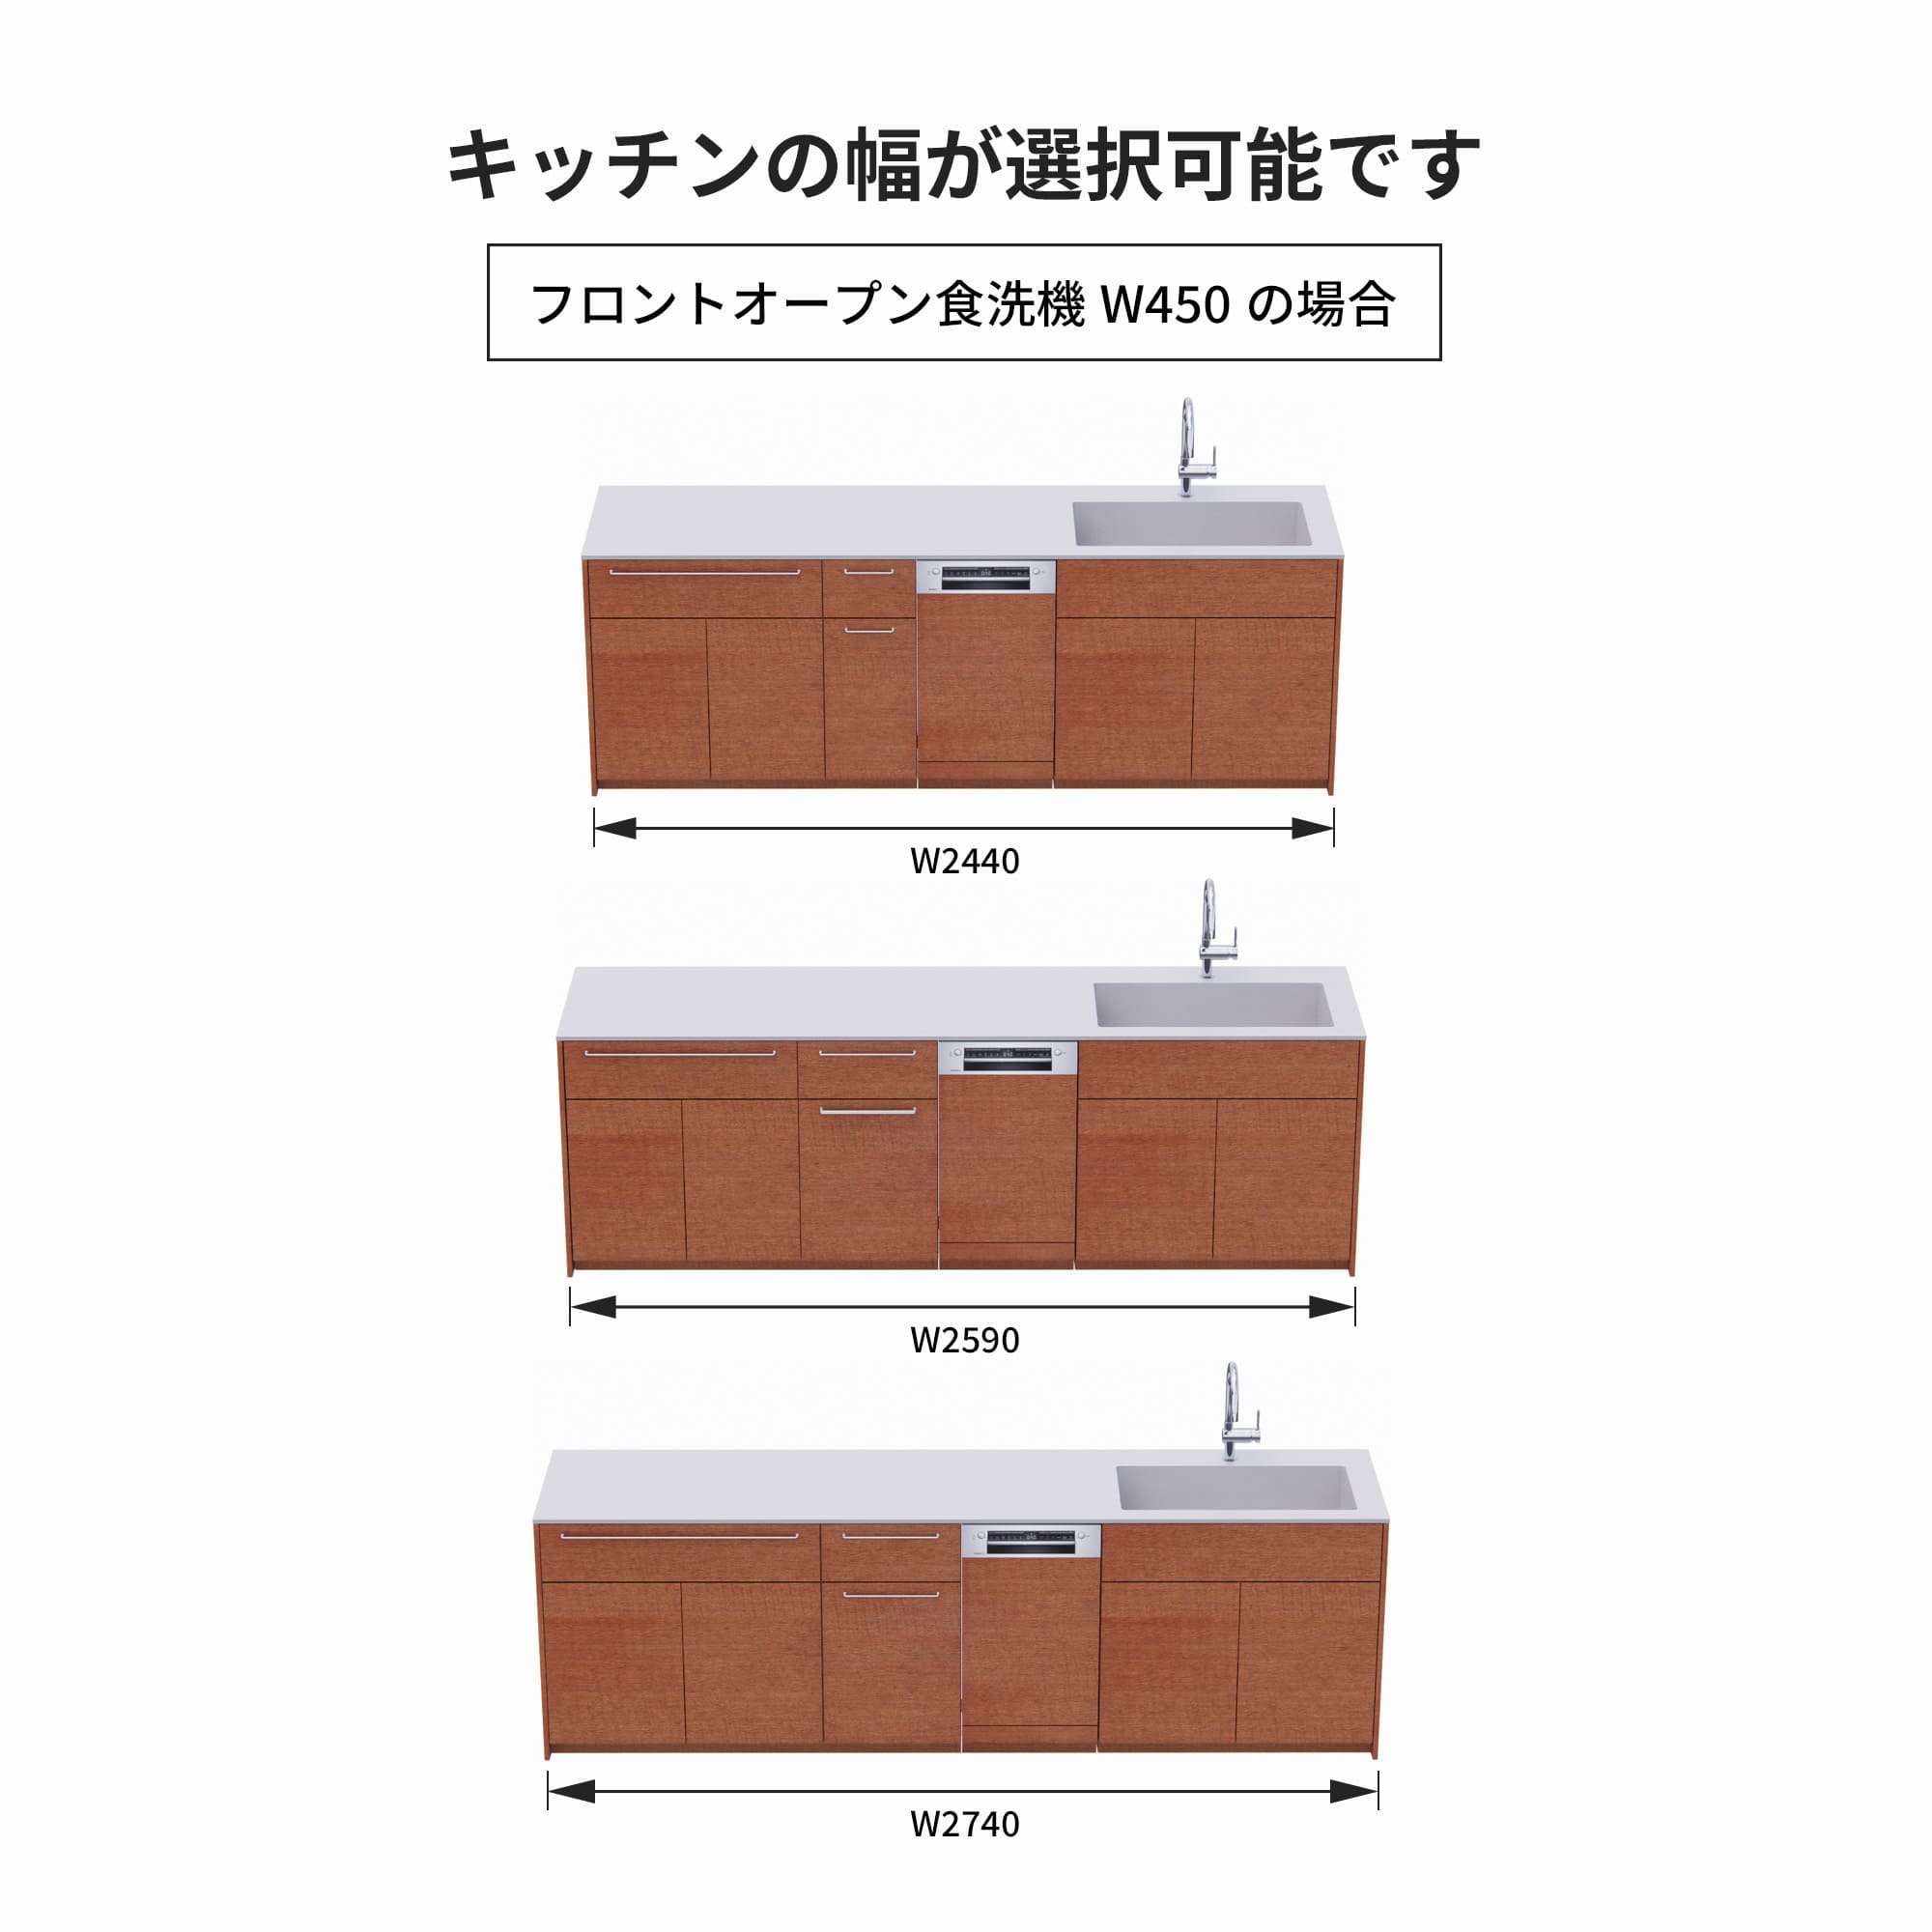 木製システムキッチン 対面型 W2440～2740・コンロなし / オーブンなし / 食洗機あり KB-KC022-45-G183 フロントオープン450の場合